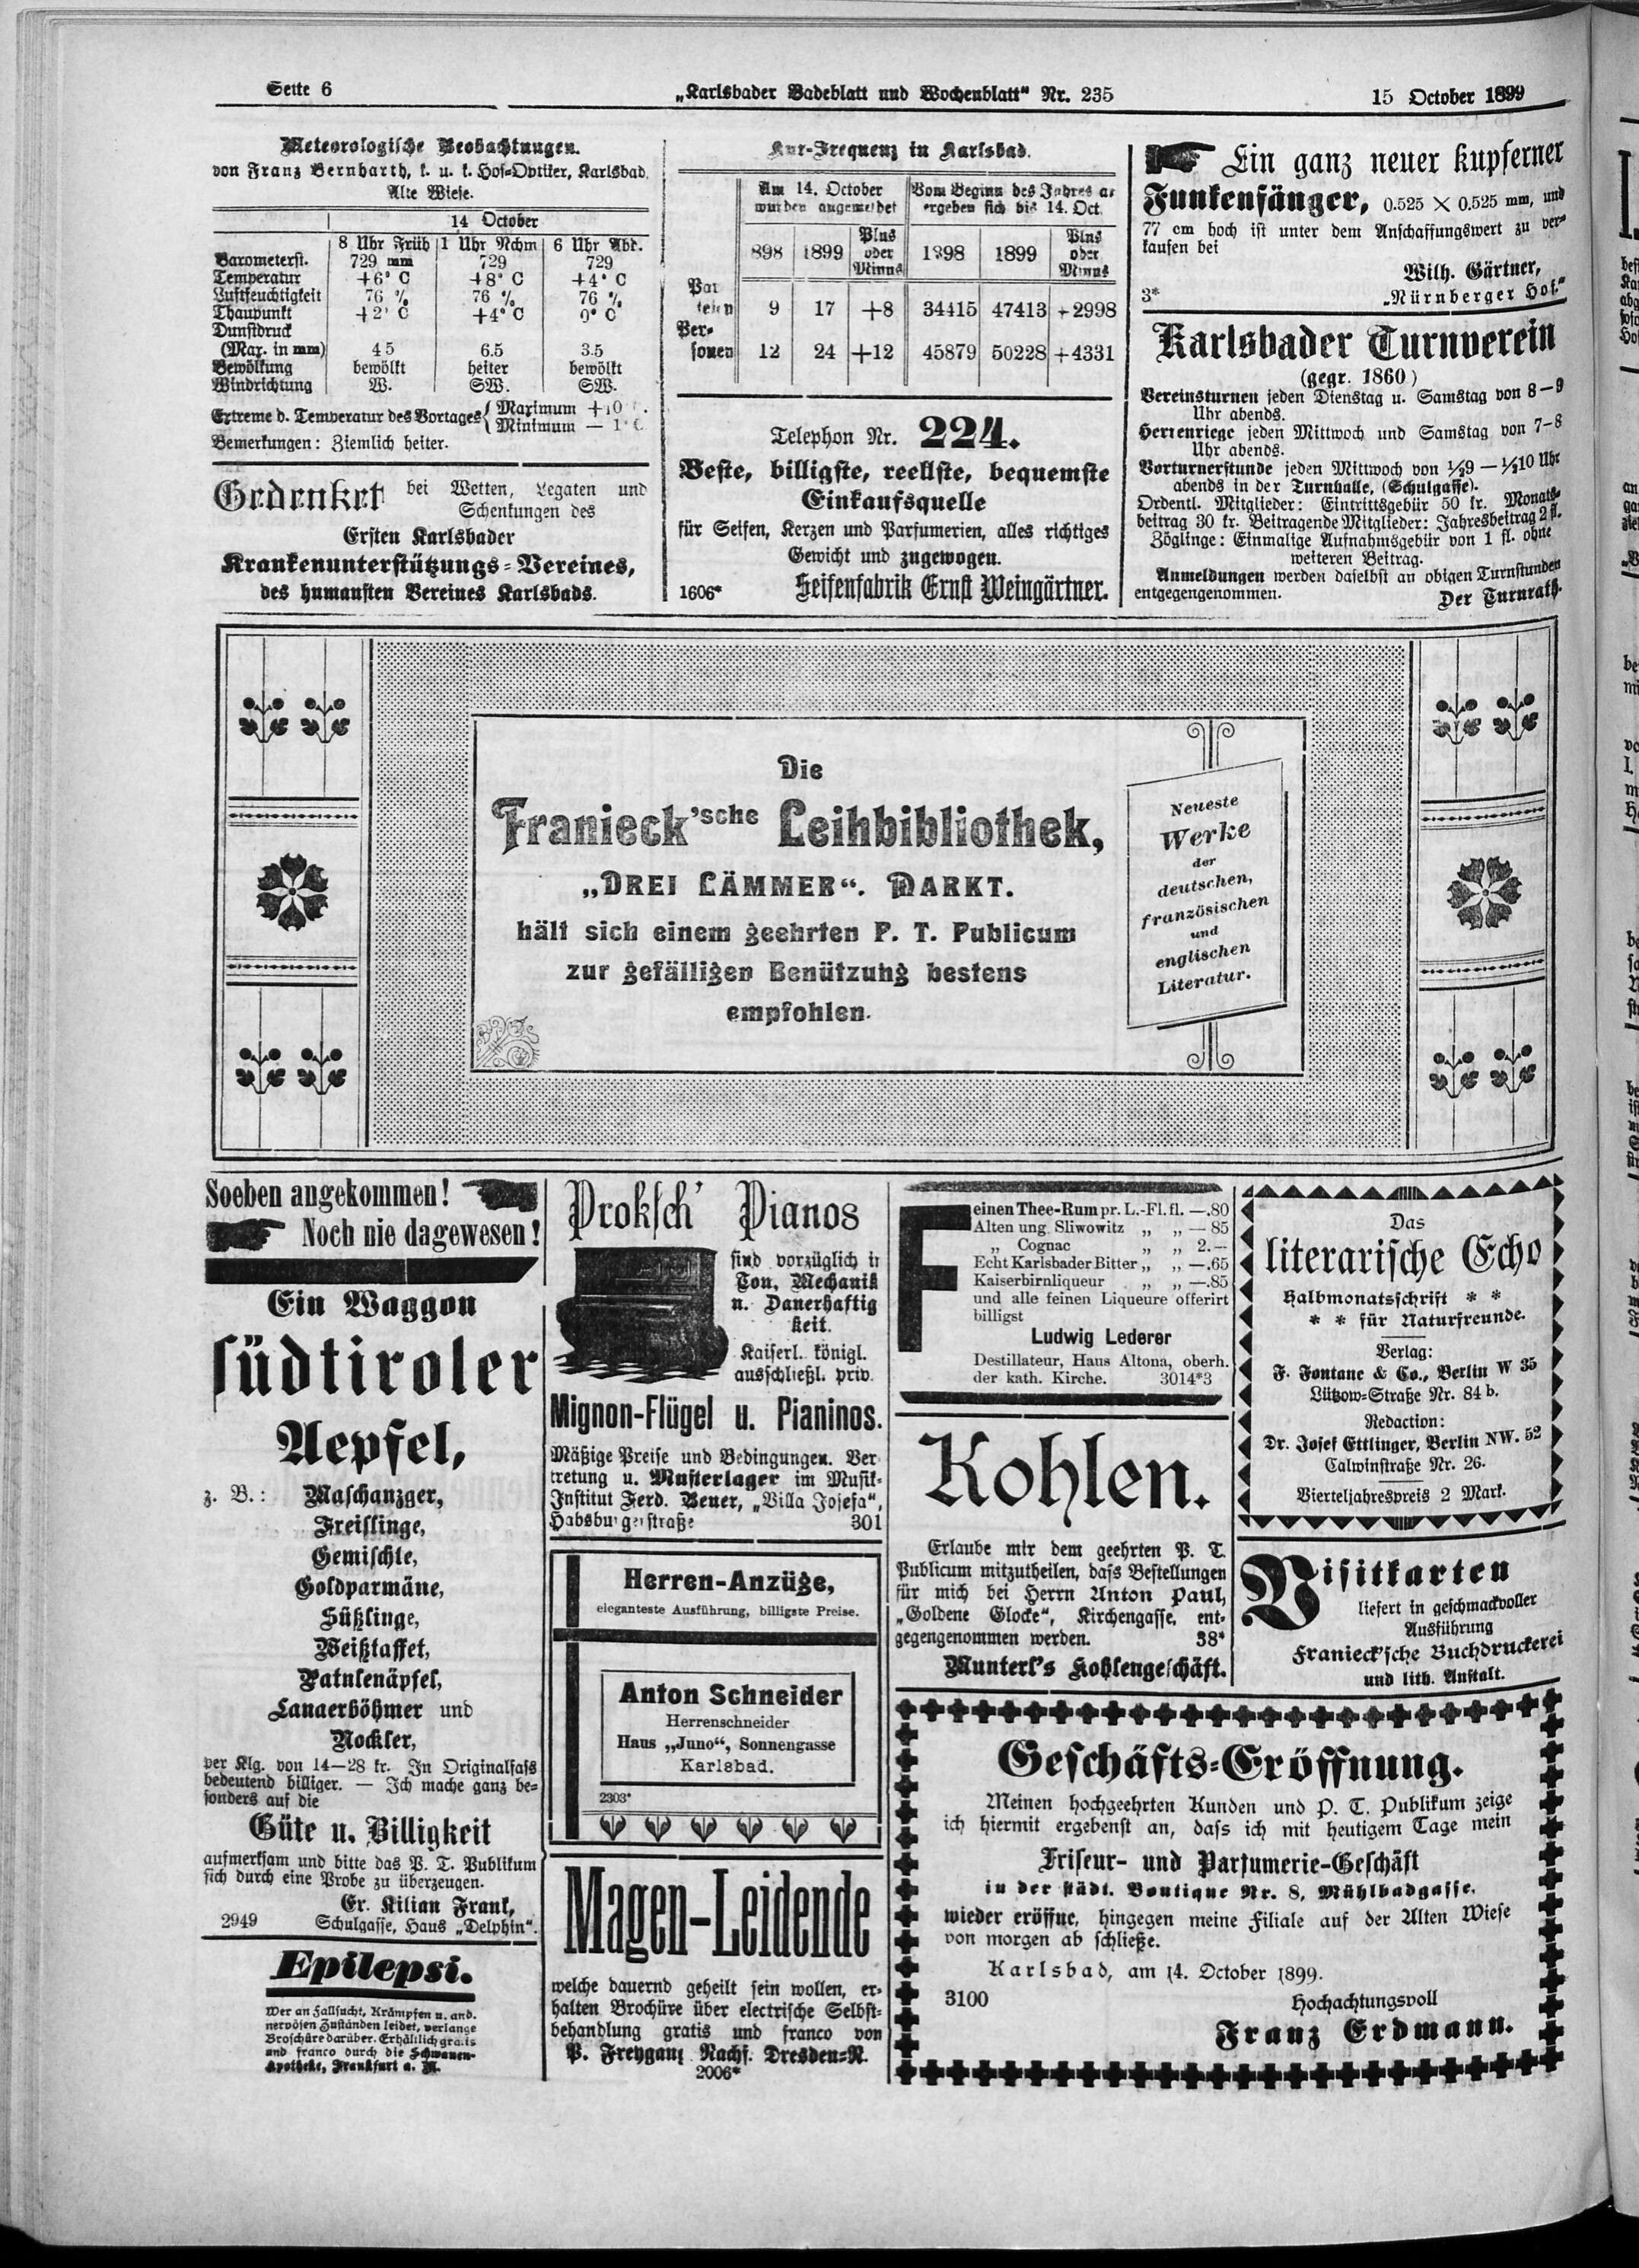 6. karlsbader-badeblatt-1899-10-15-n235_5120